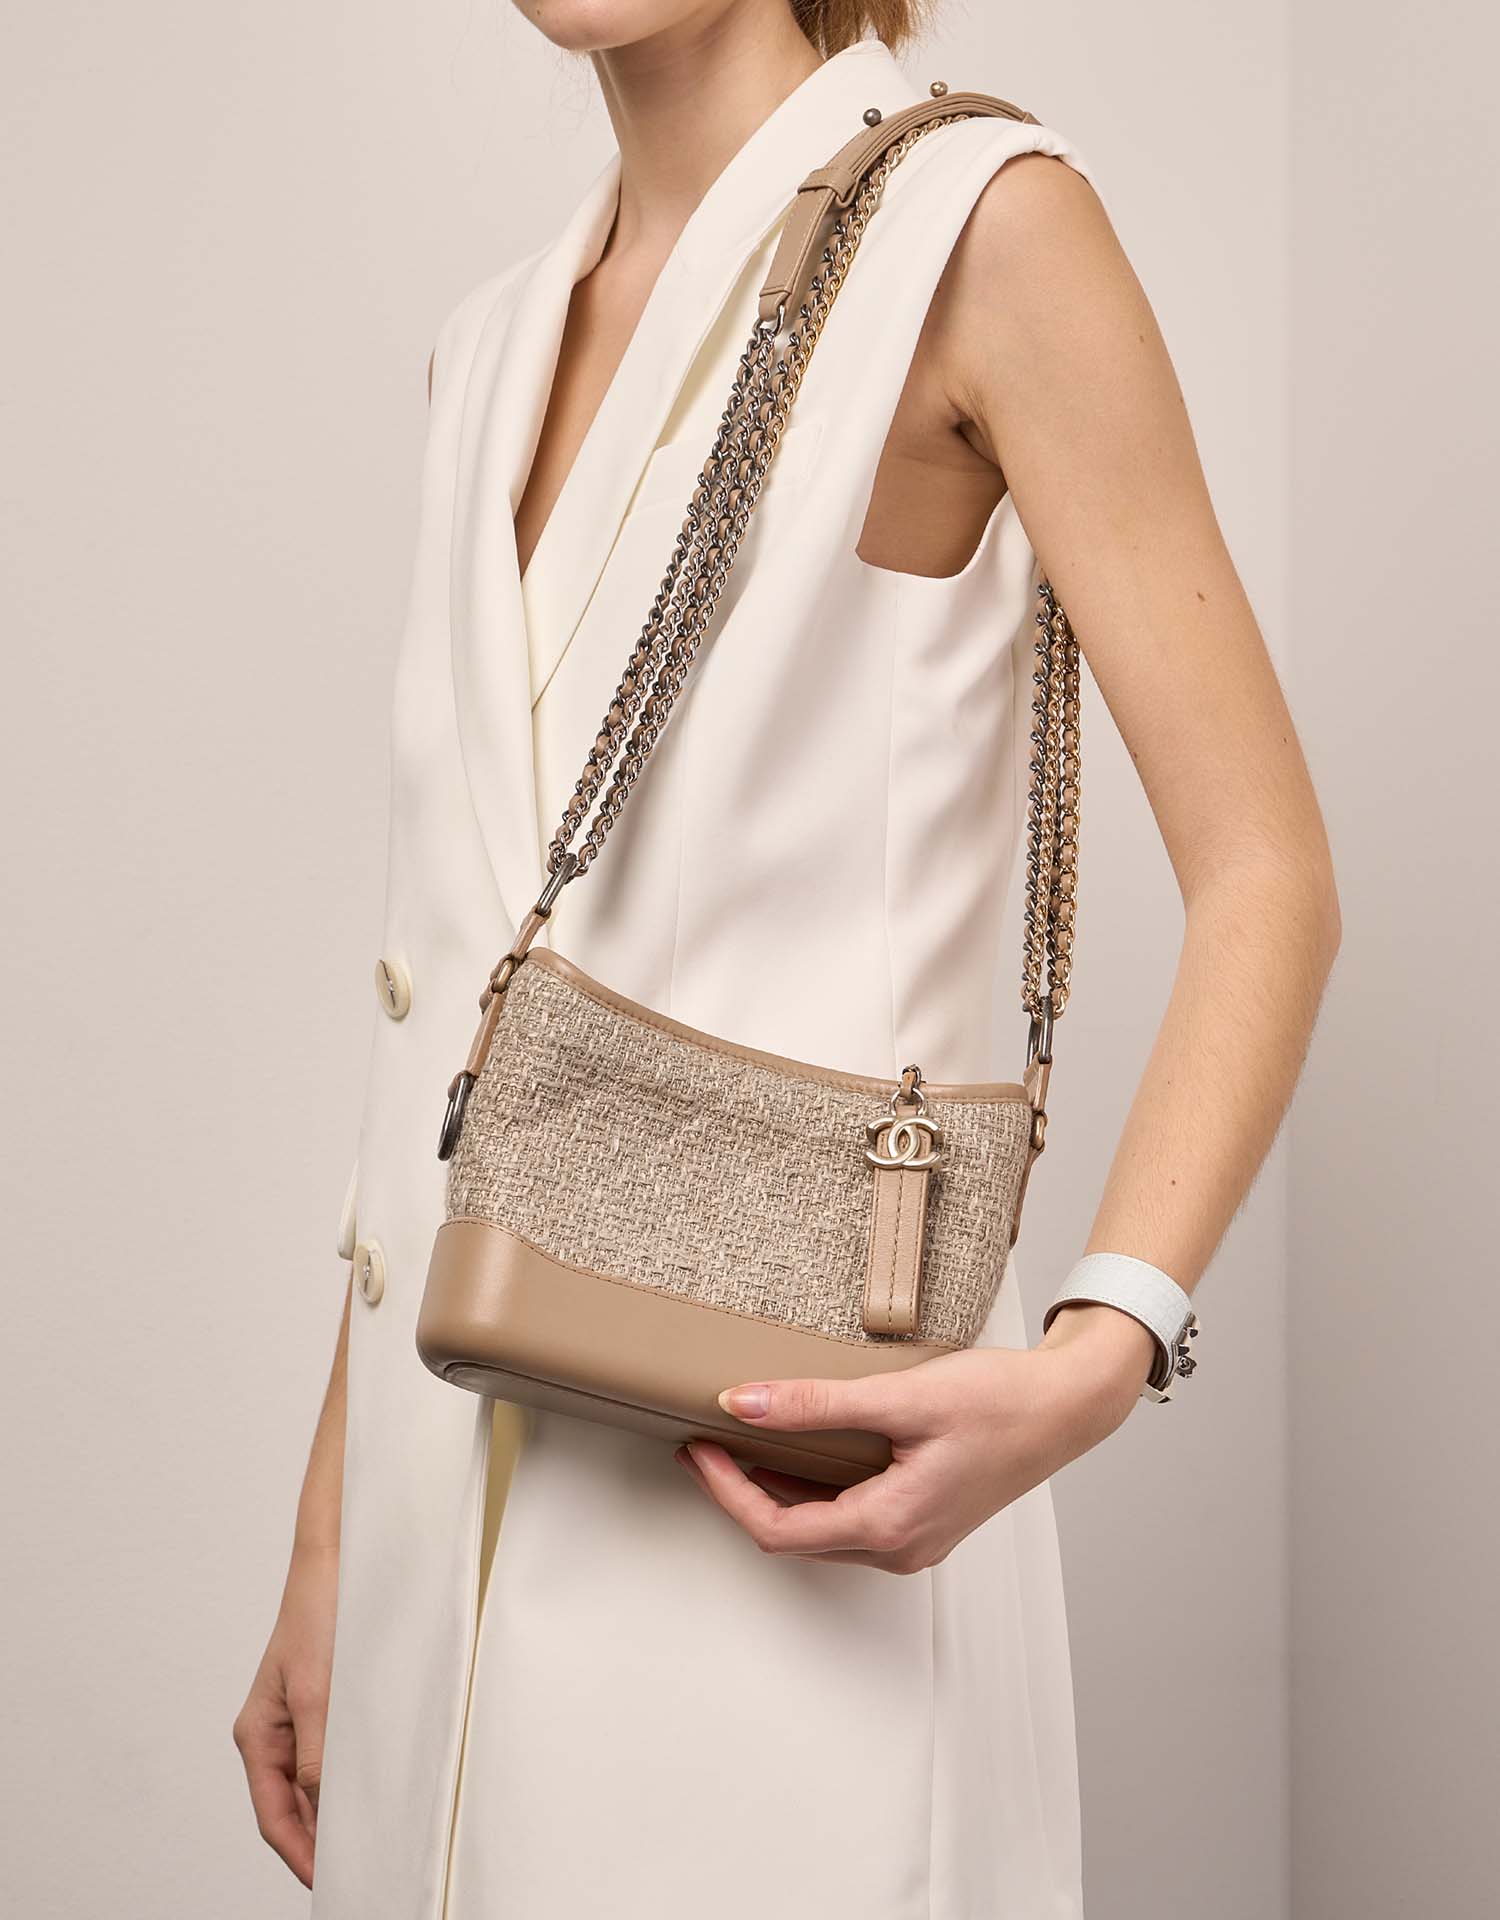 Chanel Gabrielle Klein Beige Größen Getragen | Verkaufen Sie Ihre Designer-Tasche auf Saclab.com